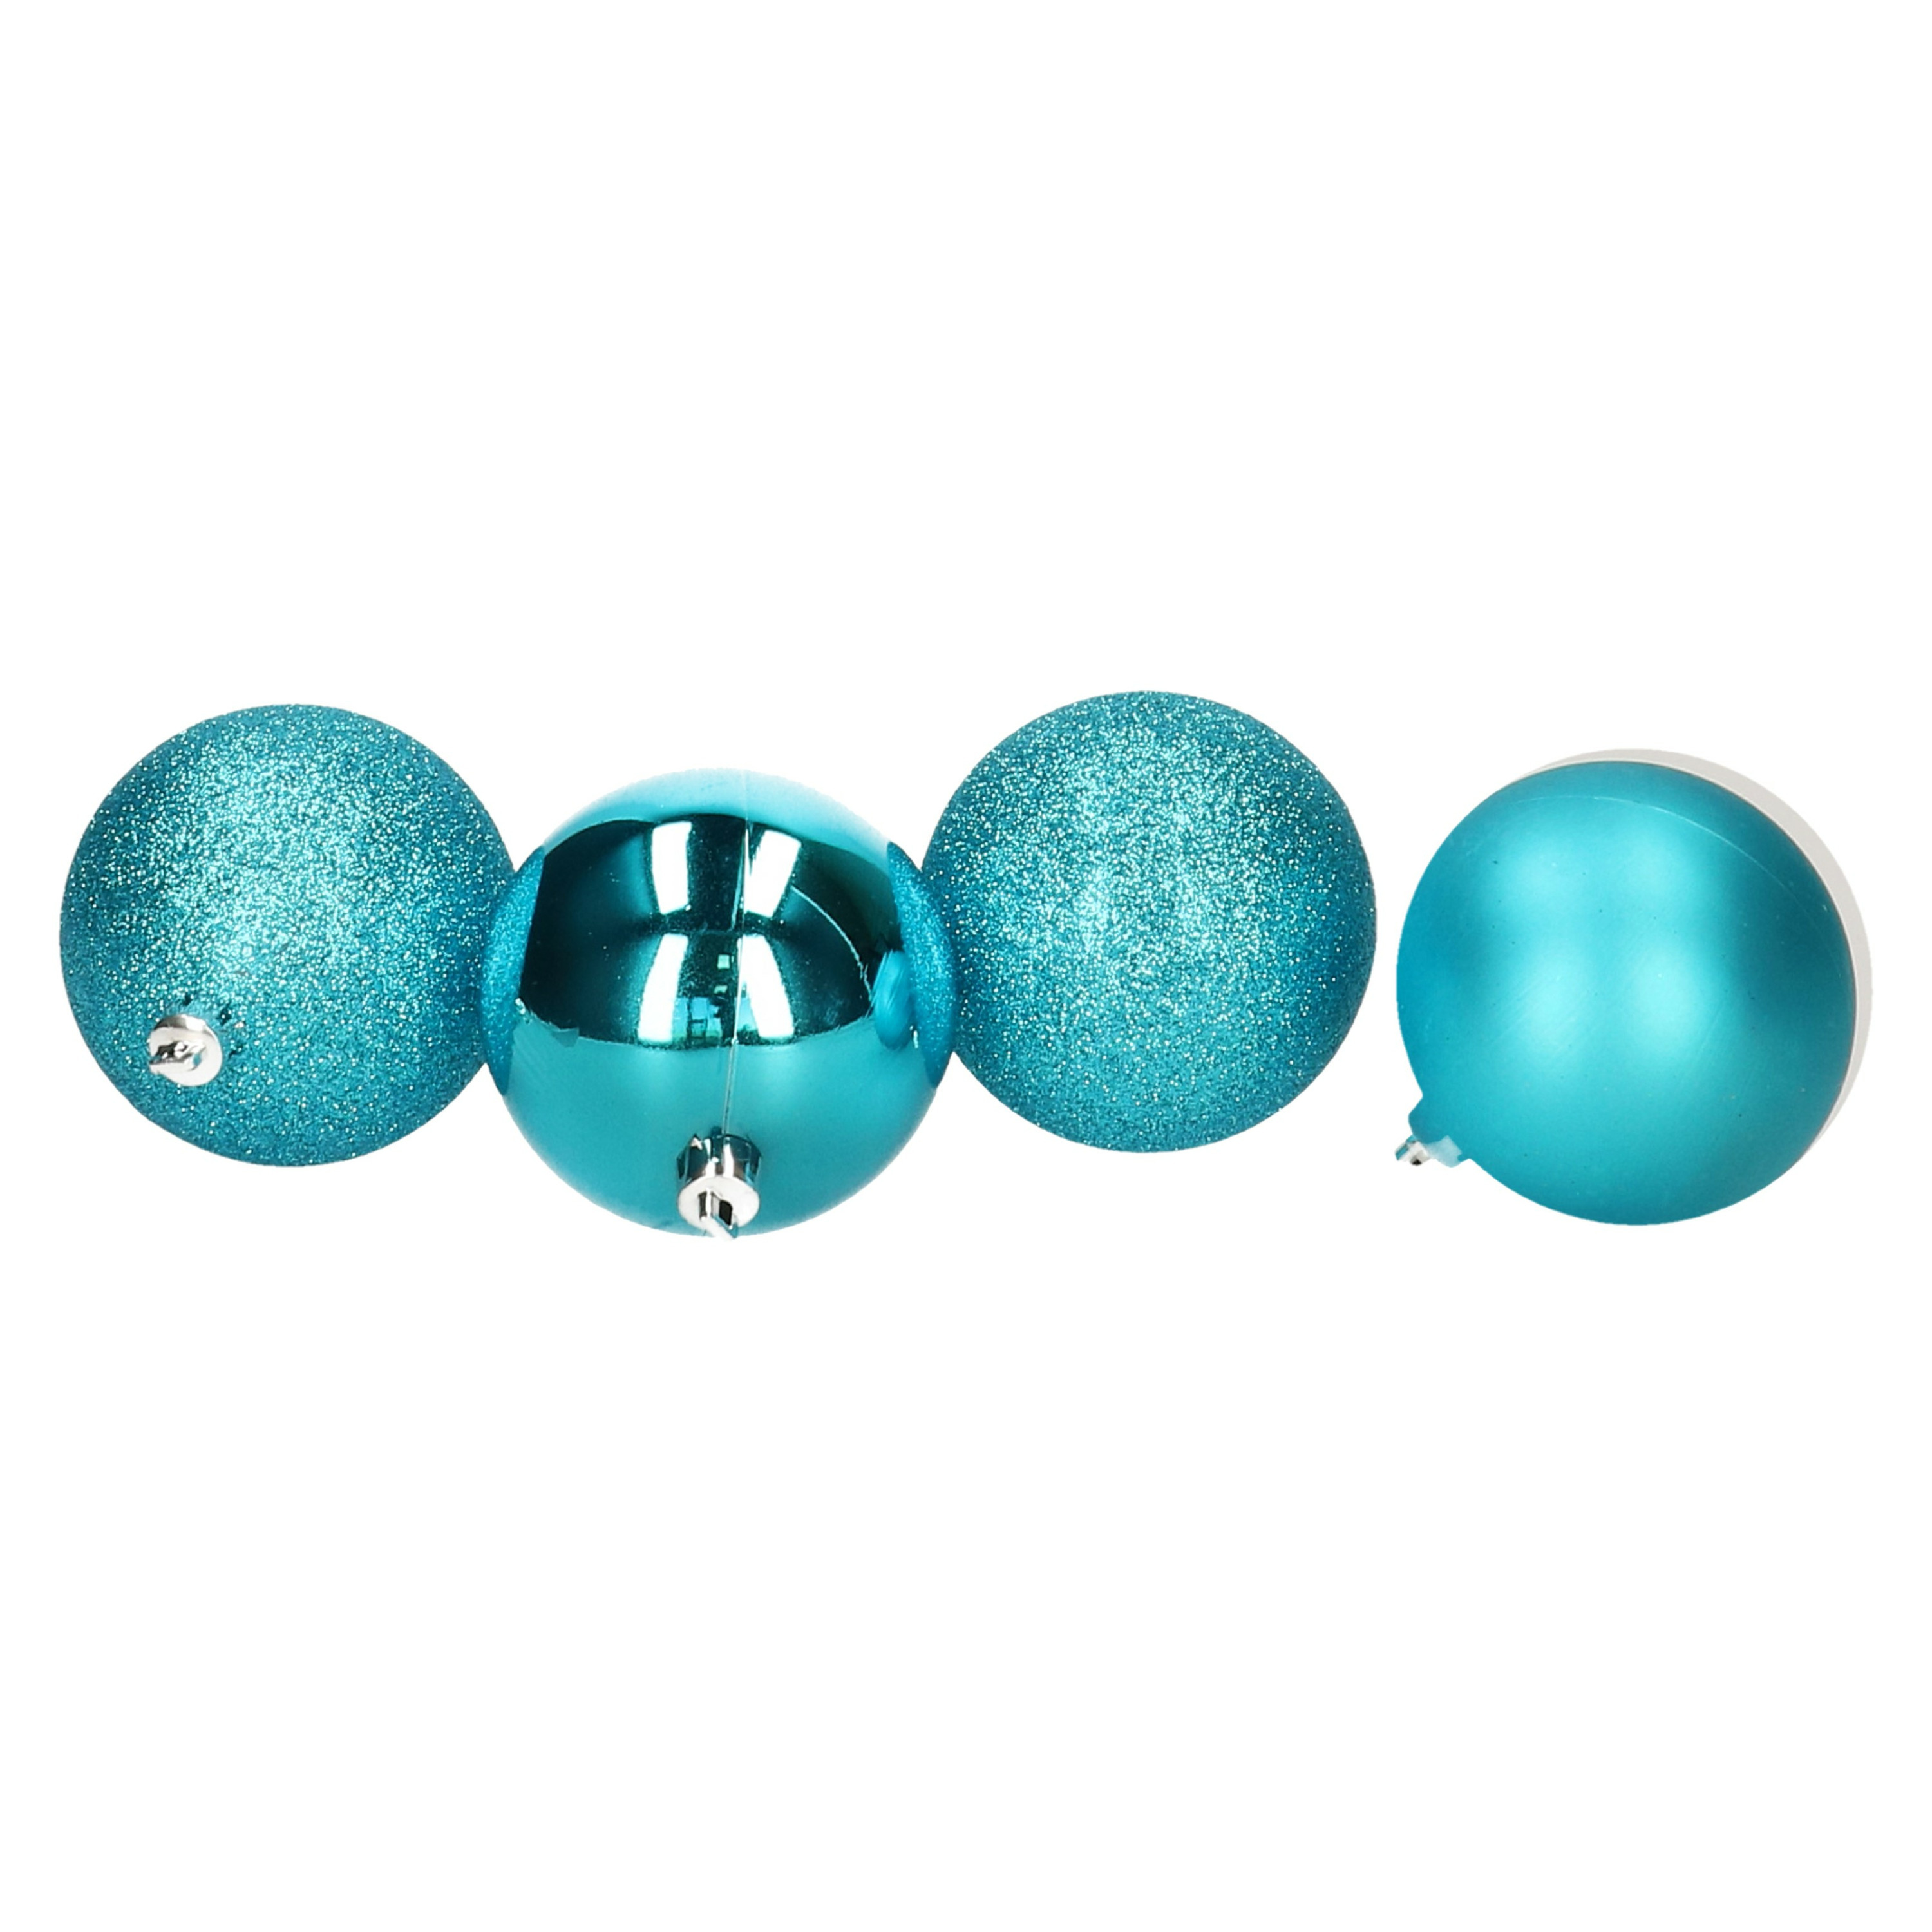 5x stuks kerstballen turquoise blauw glans en mat kunststof 5 cm